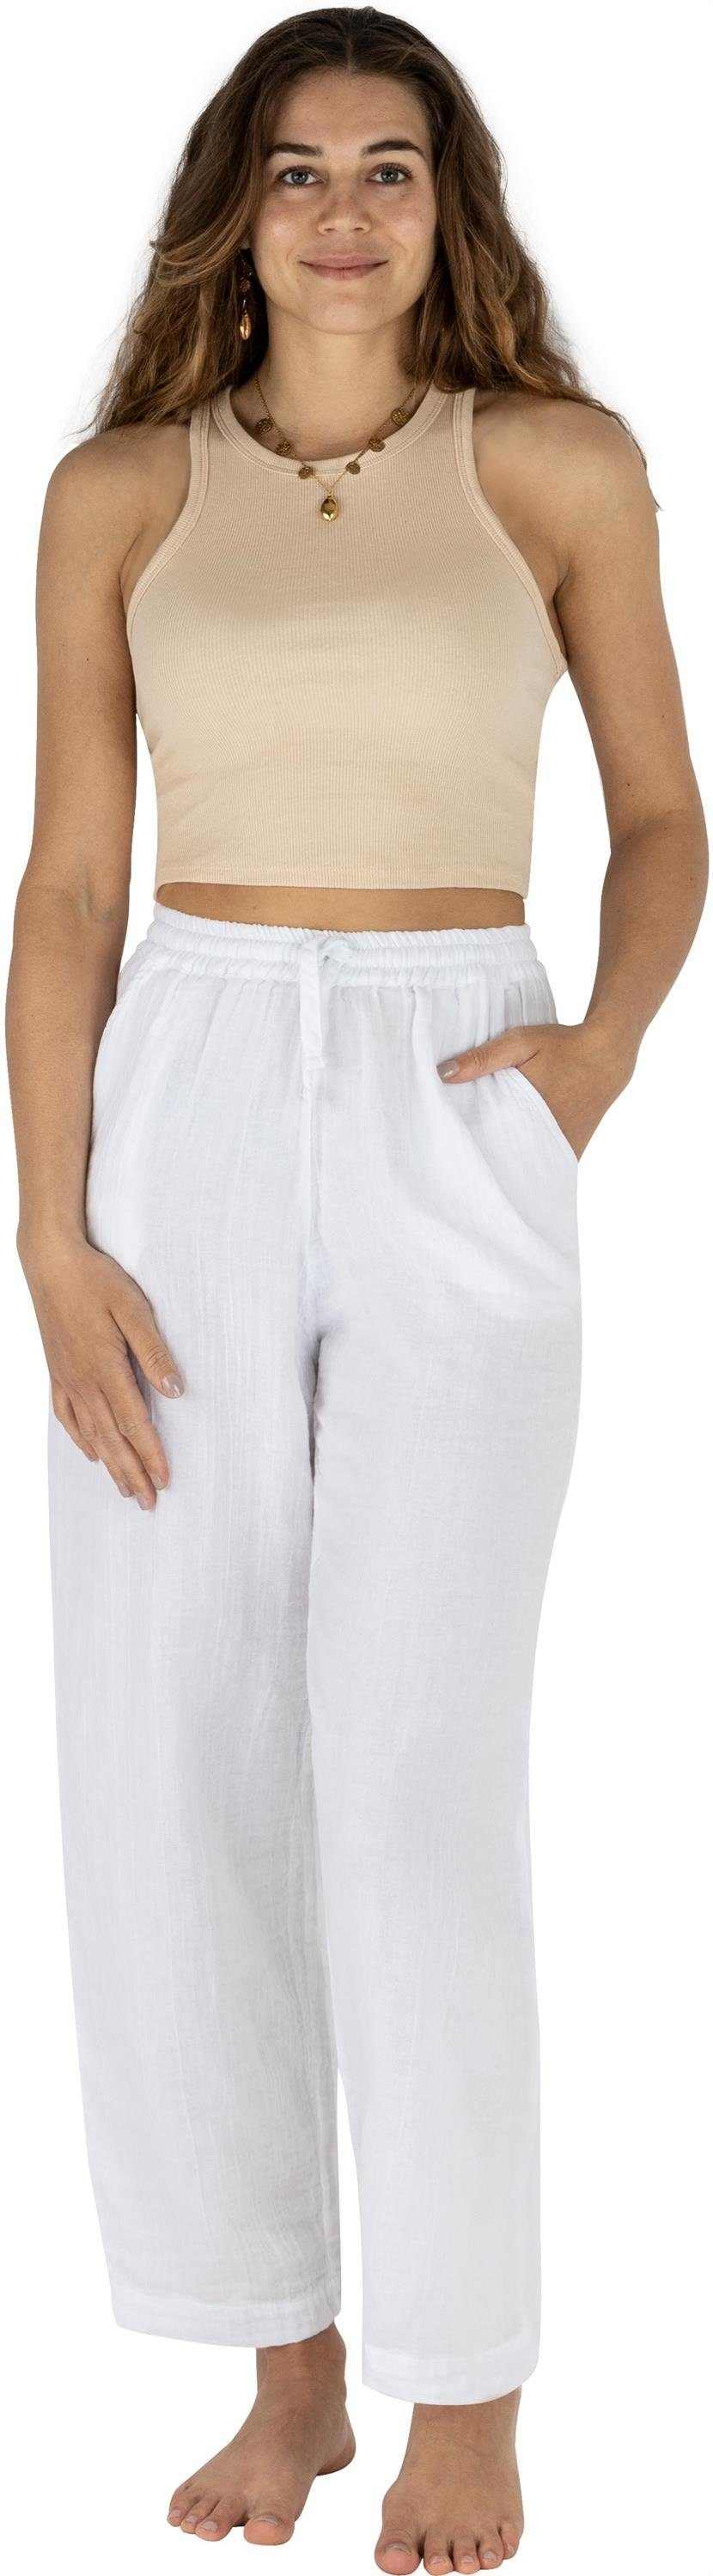 Janice Frauen Damen Sommer Hose für Stoffhose Musselin Weiß Stoffhose Lockere Lange